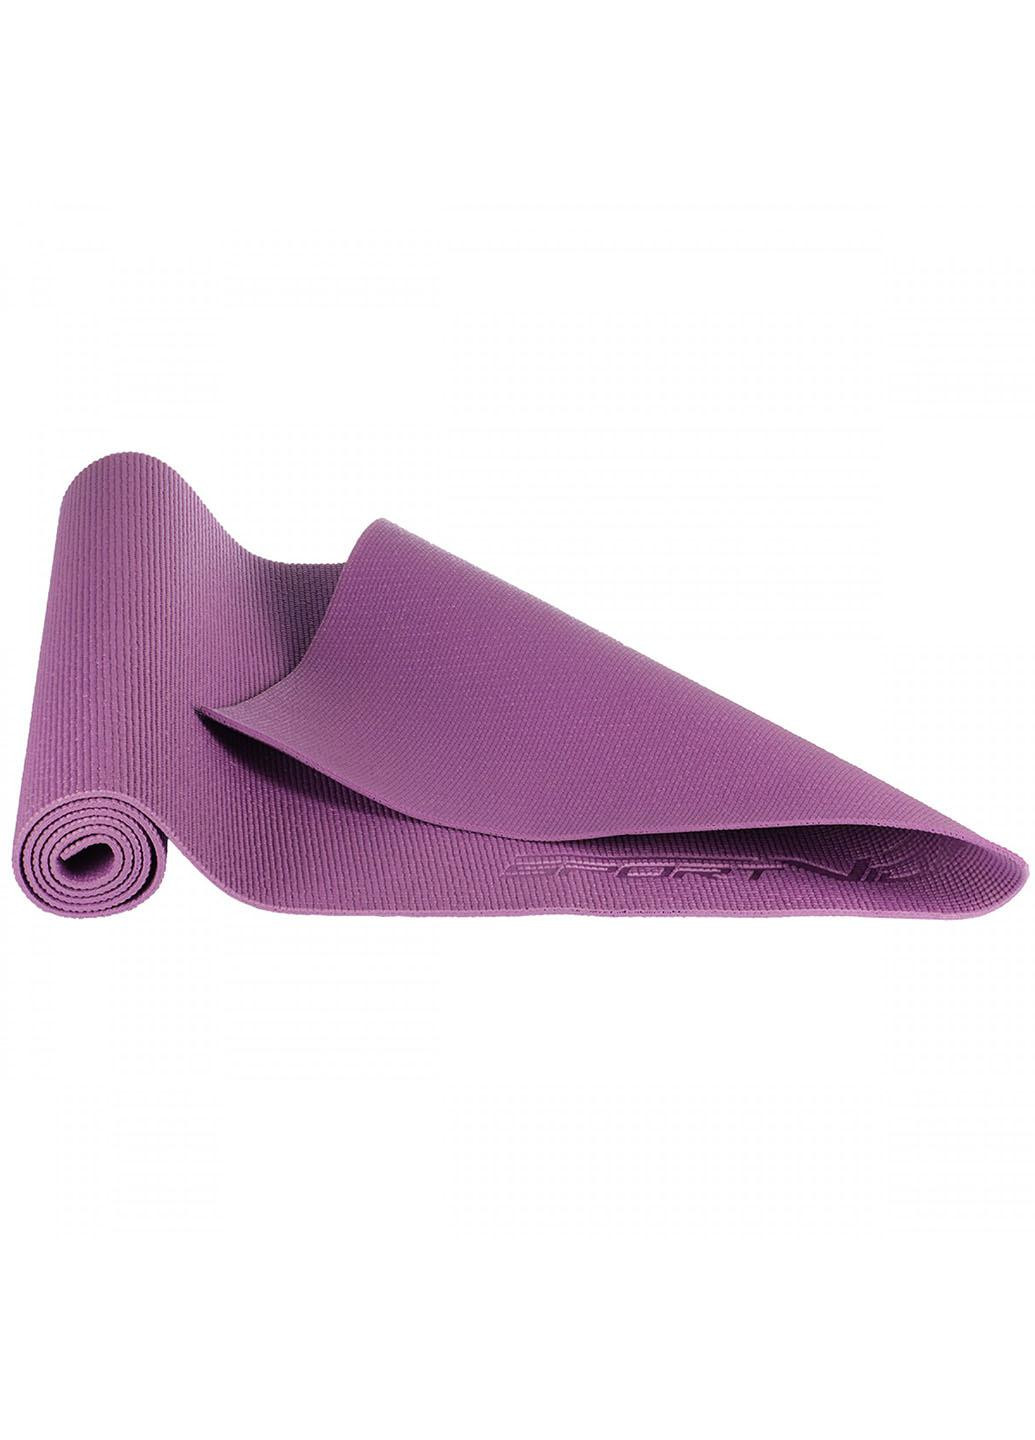 Коврик спортивный PVC 6 мм для йоги и фитнеса SV-HK0052 Violet SportVida (263131175)